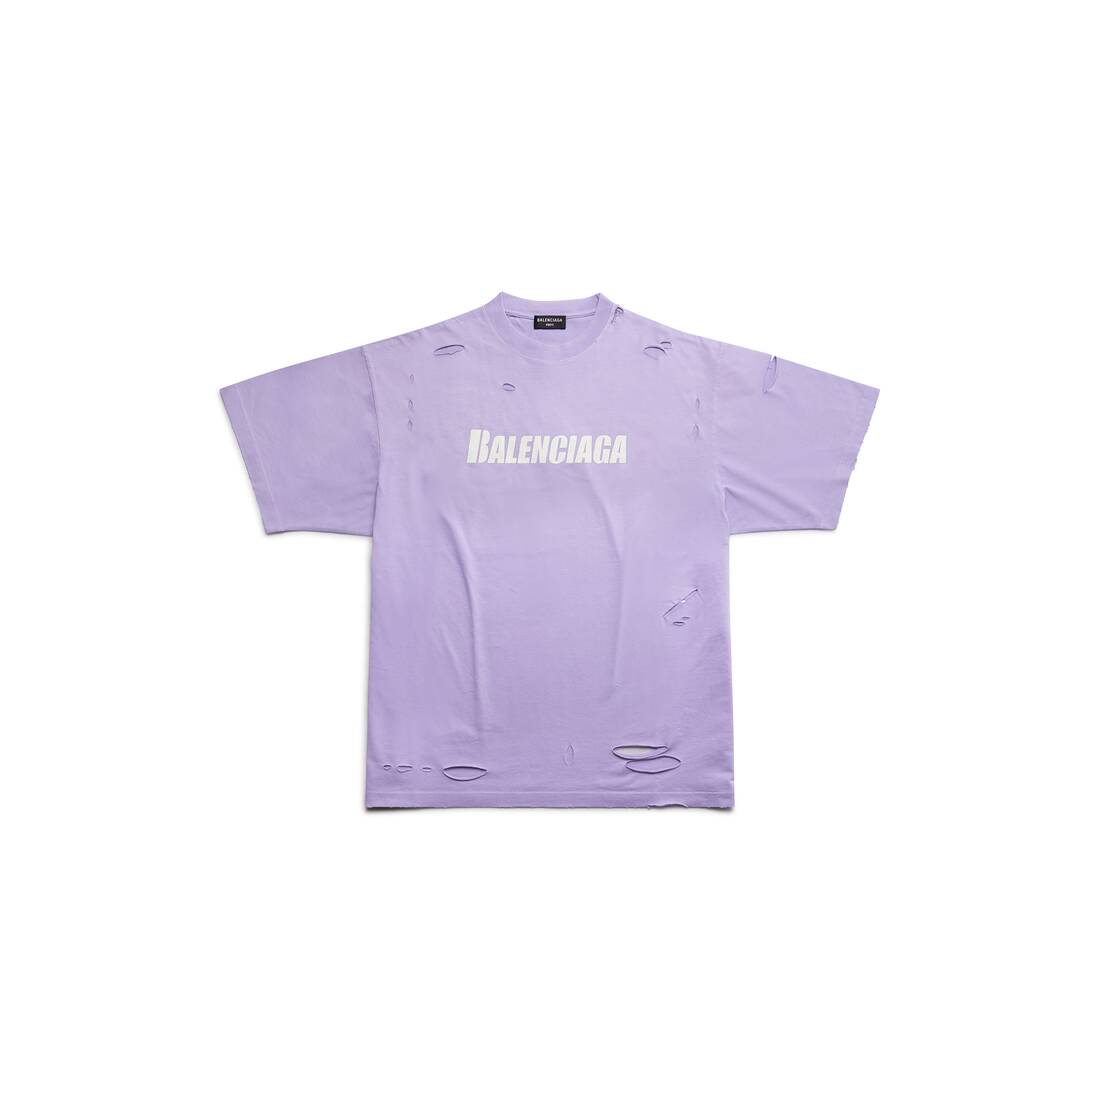 Chia sẻ với hơn 72 về balenciaga t shirt purple mới nhất